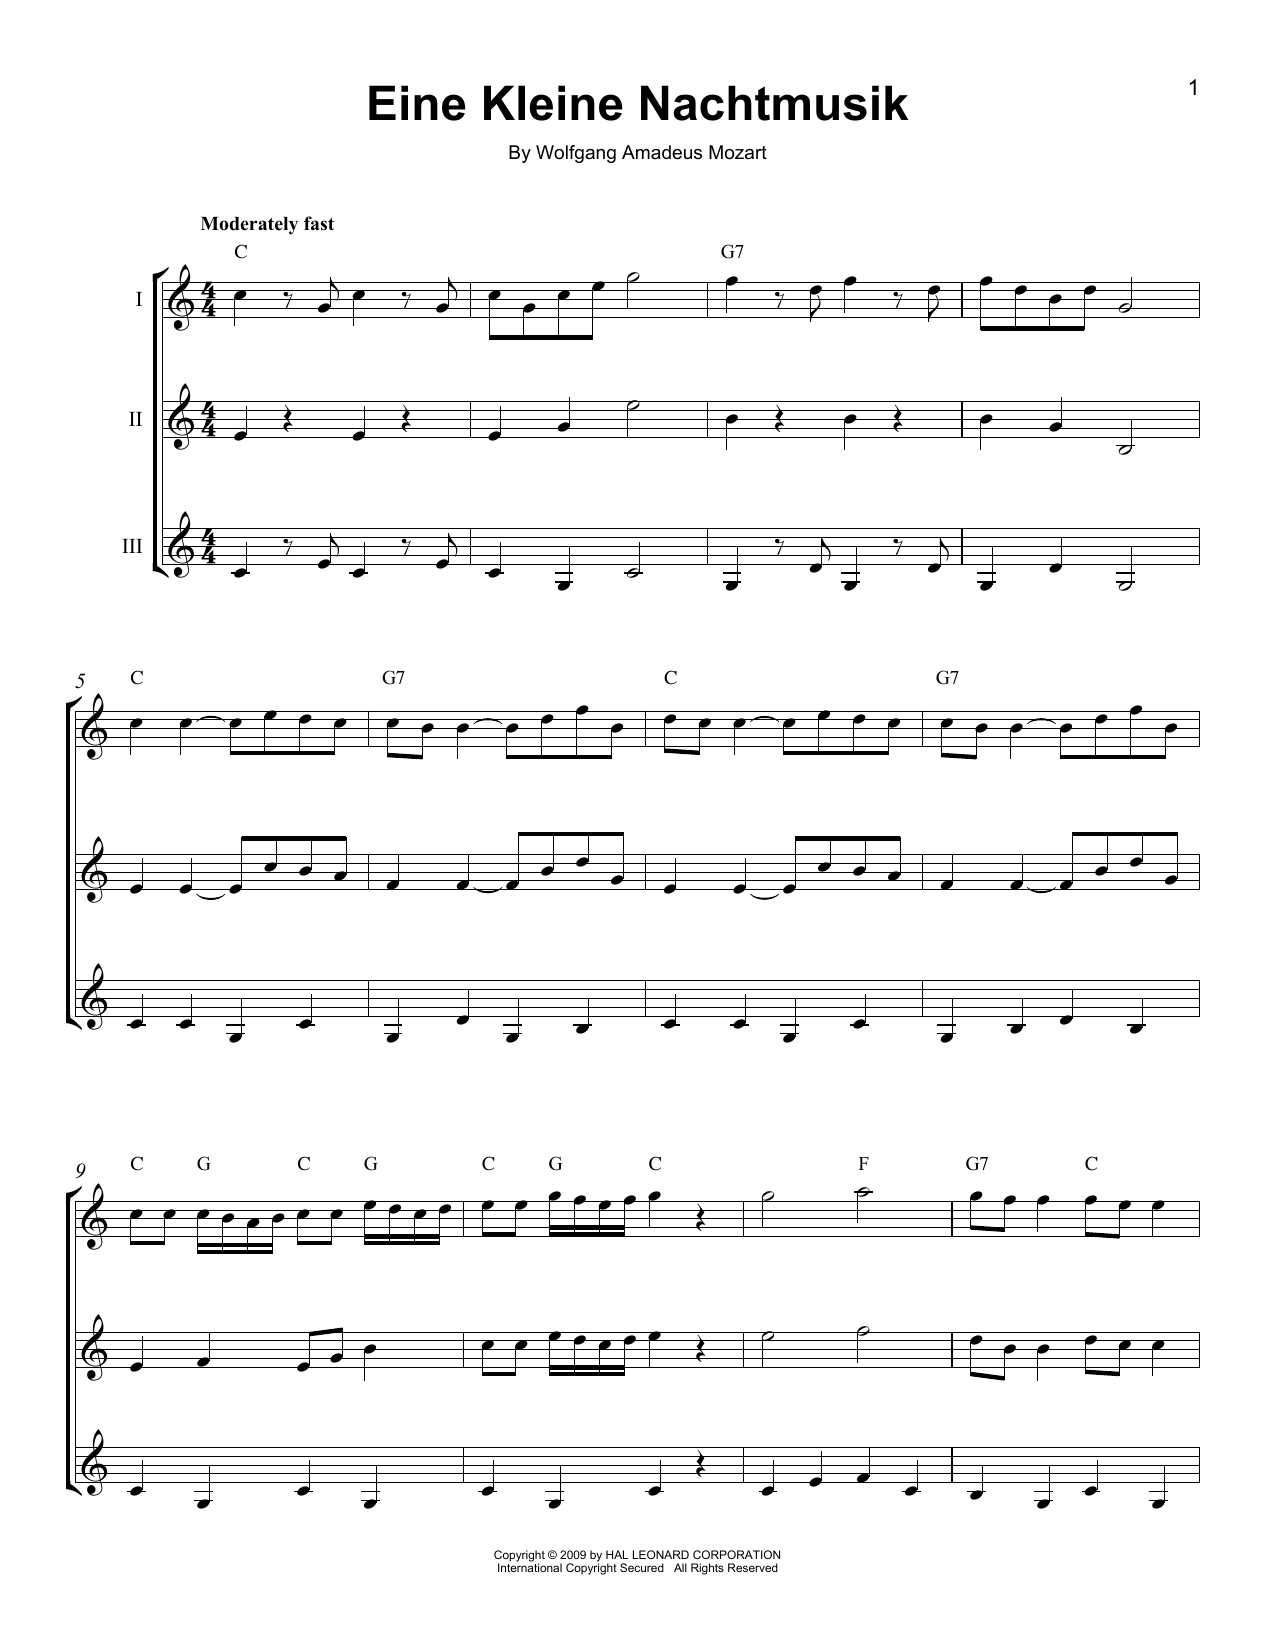 Learn Wolfgang Amadeus Mozart Eine Kleine Nachtmusik sheet music notes, cho...